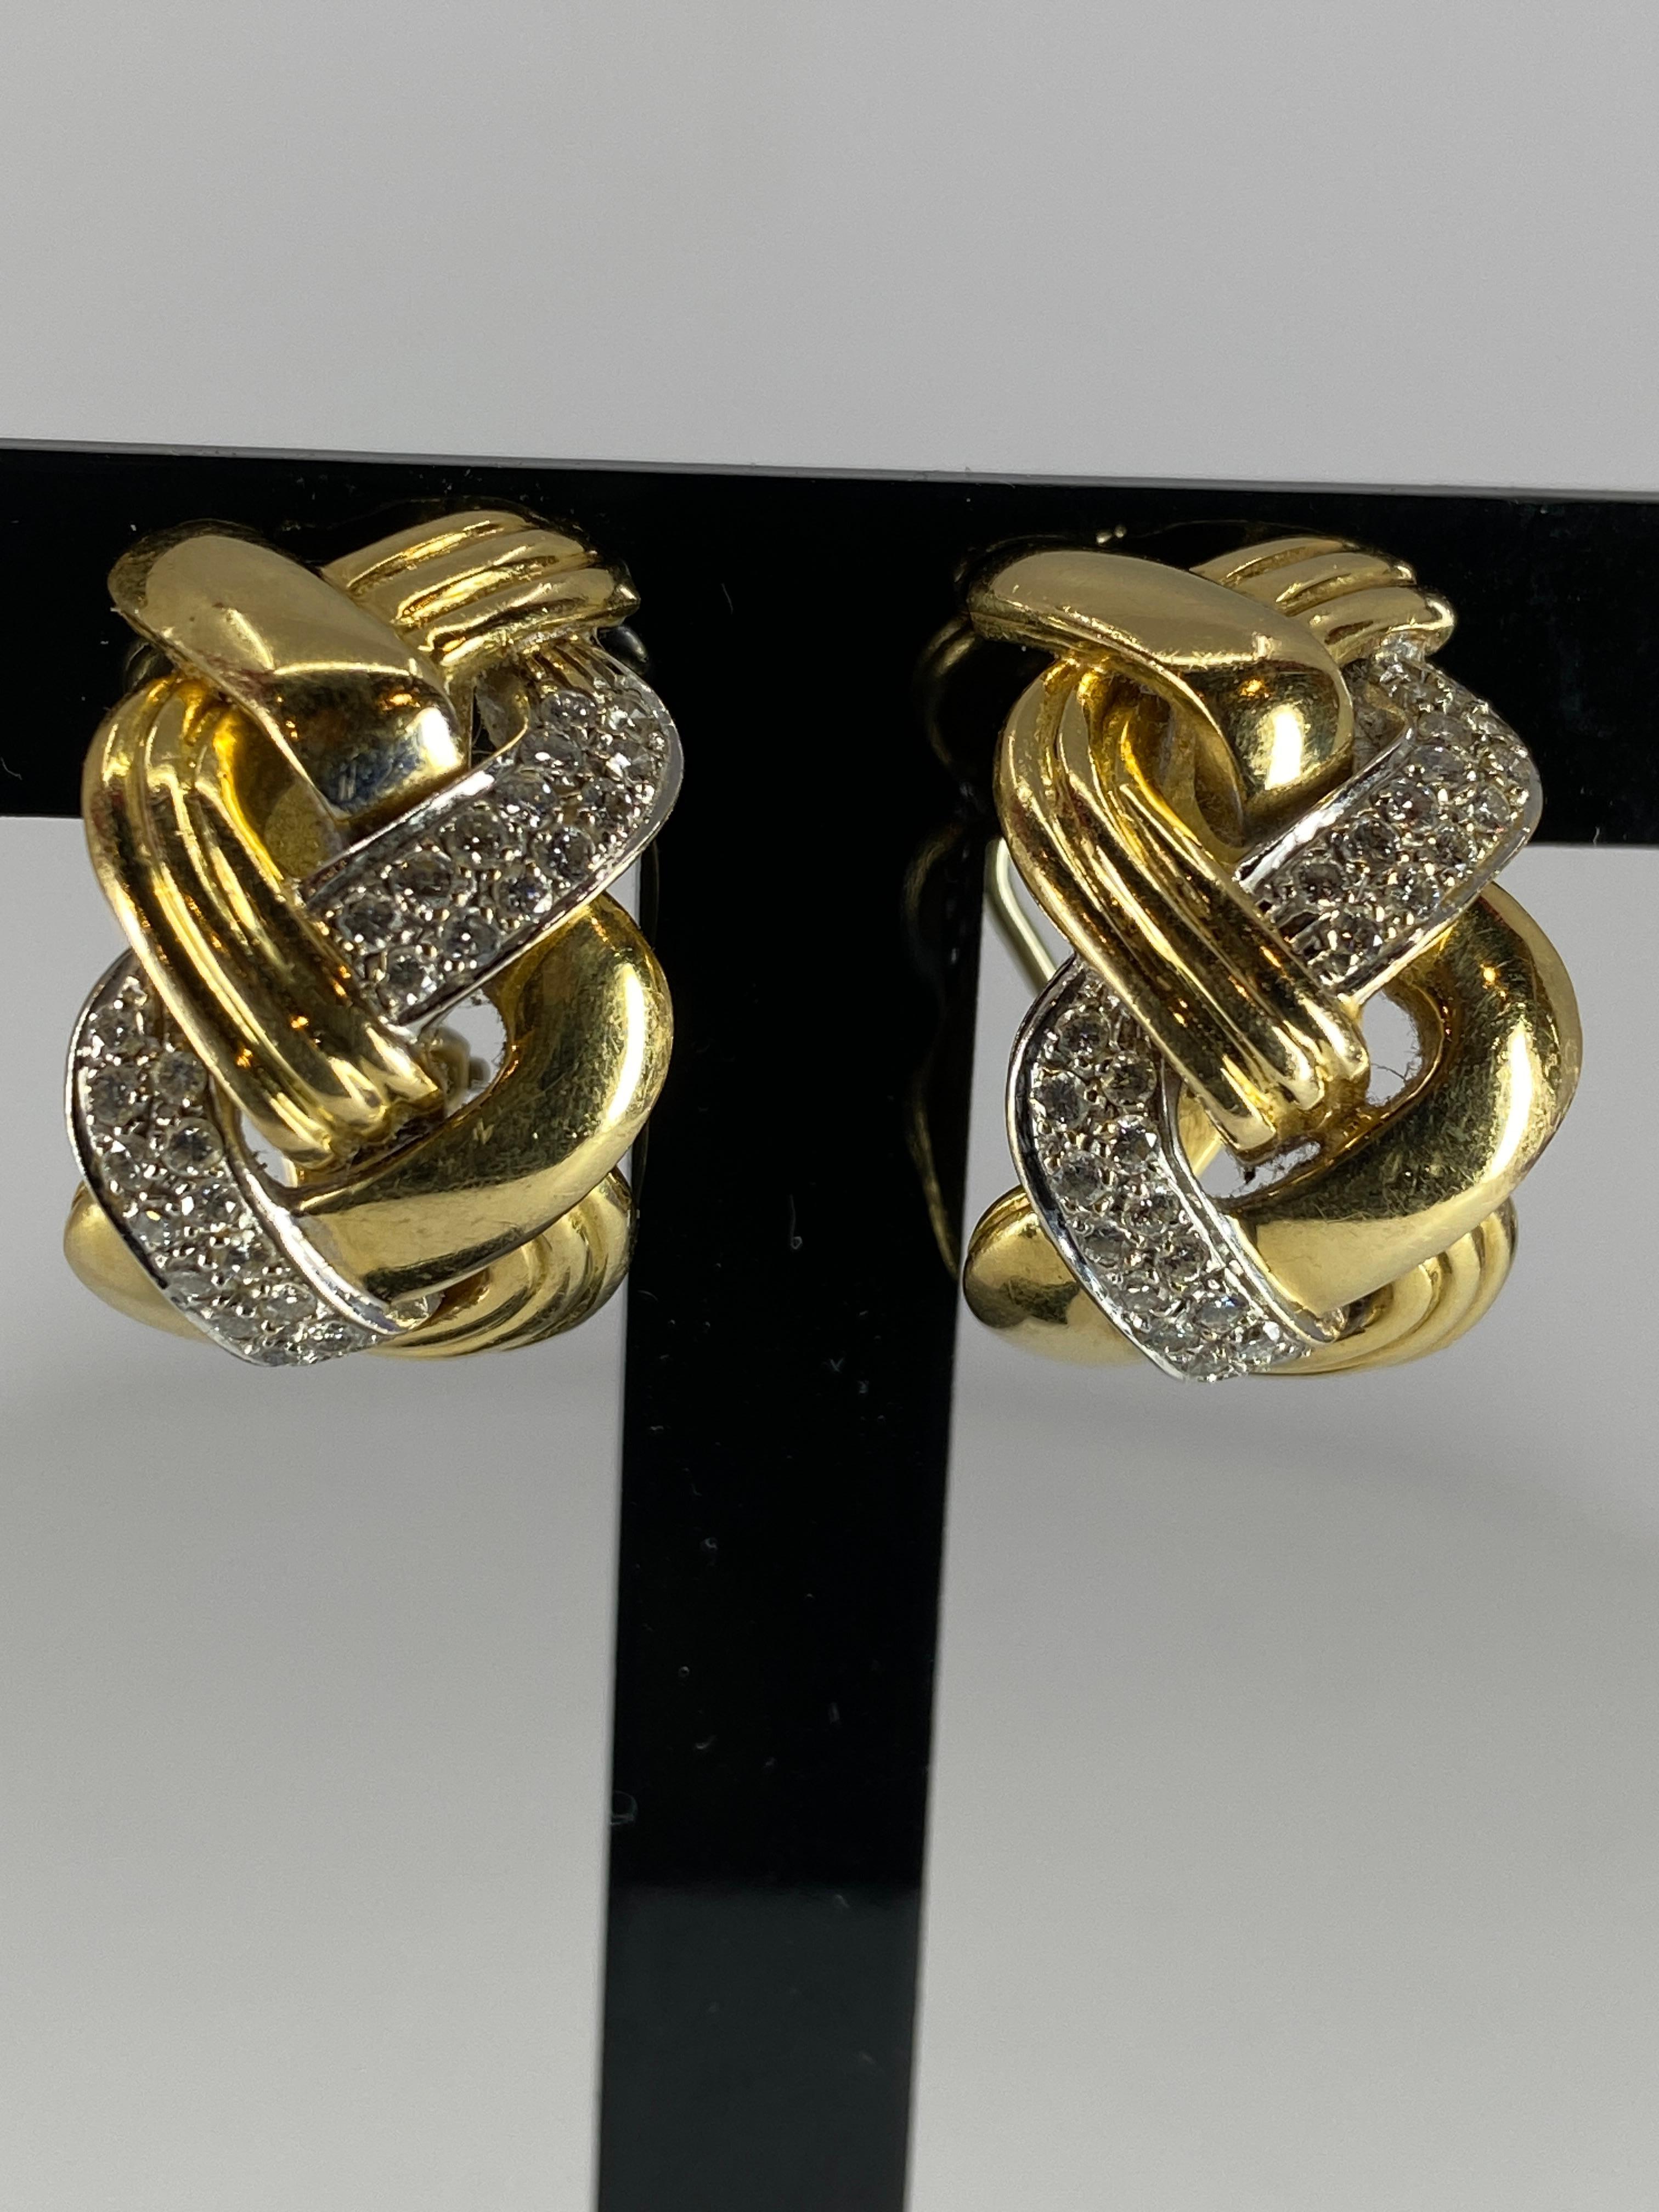 Très élégante paire de boucles d’oreilles en or 18 carats à décor de tresses en or lisse, en or strié et en or serti de diamants ( poids des diamants 0.60 carat environ ). Elles sont signées de la maison REPOSSI et sont munies d’un système à clip.